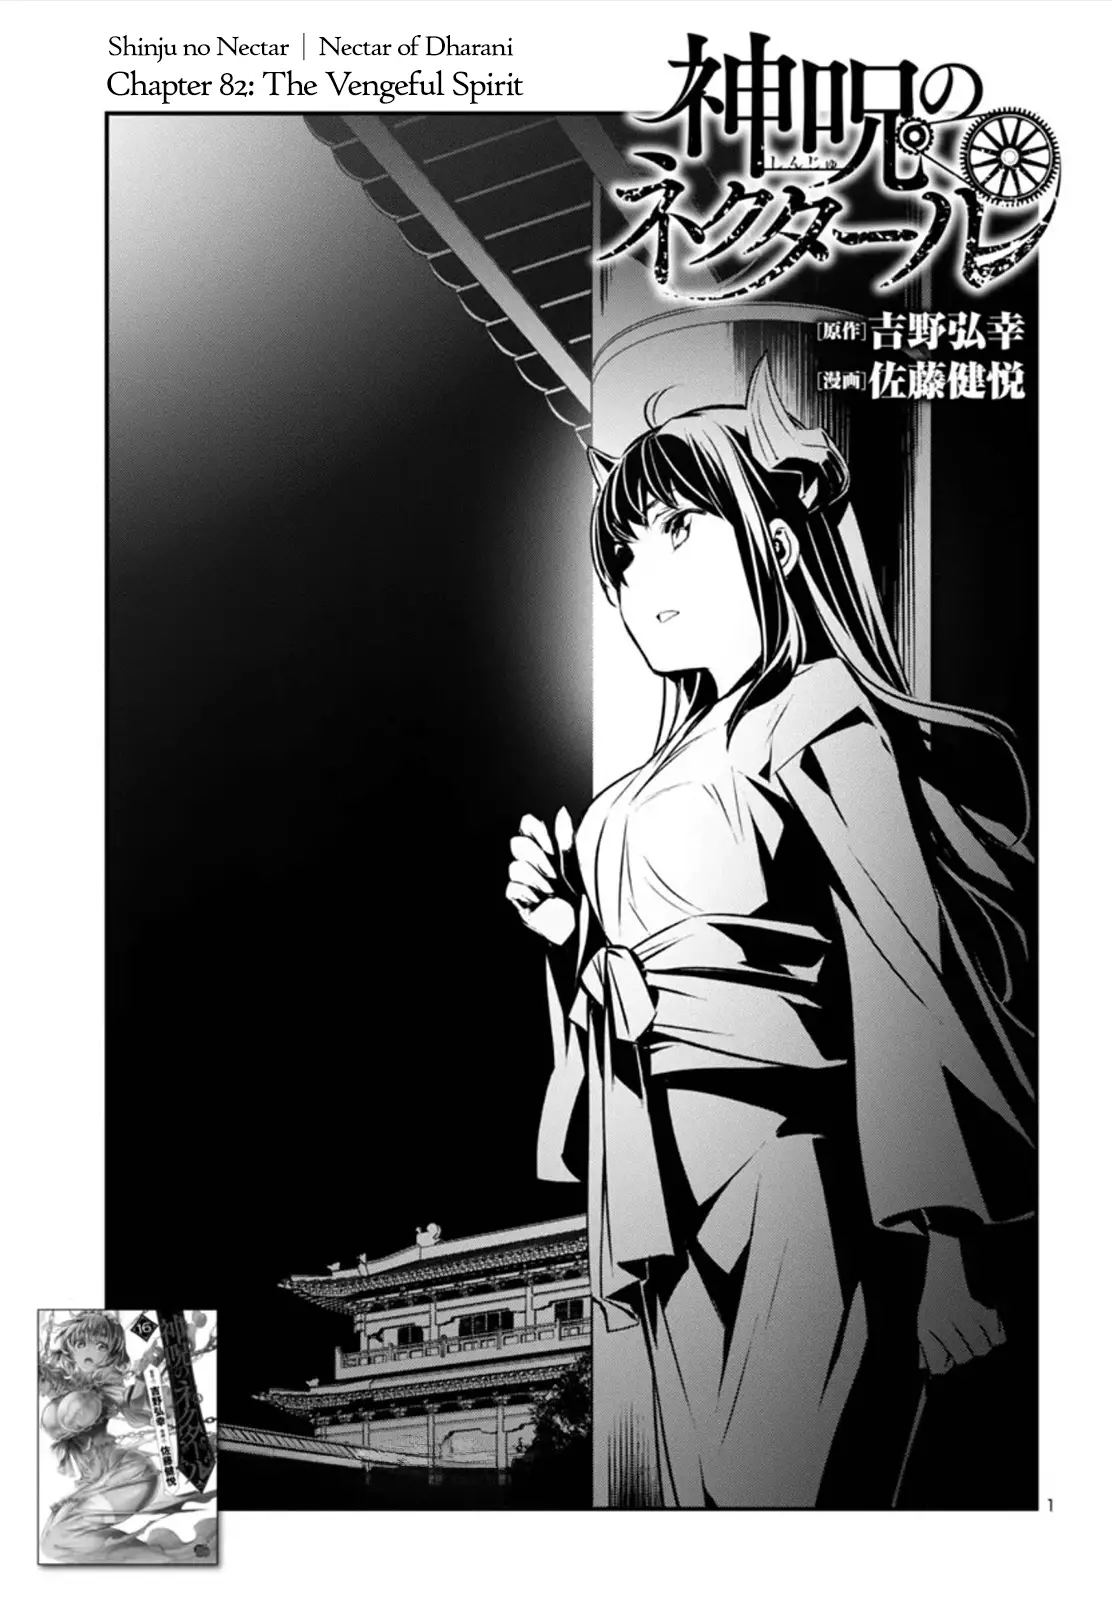 Shinju no Nectar - 82 page 1-9c920611